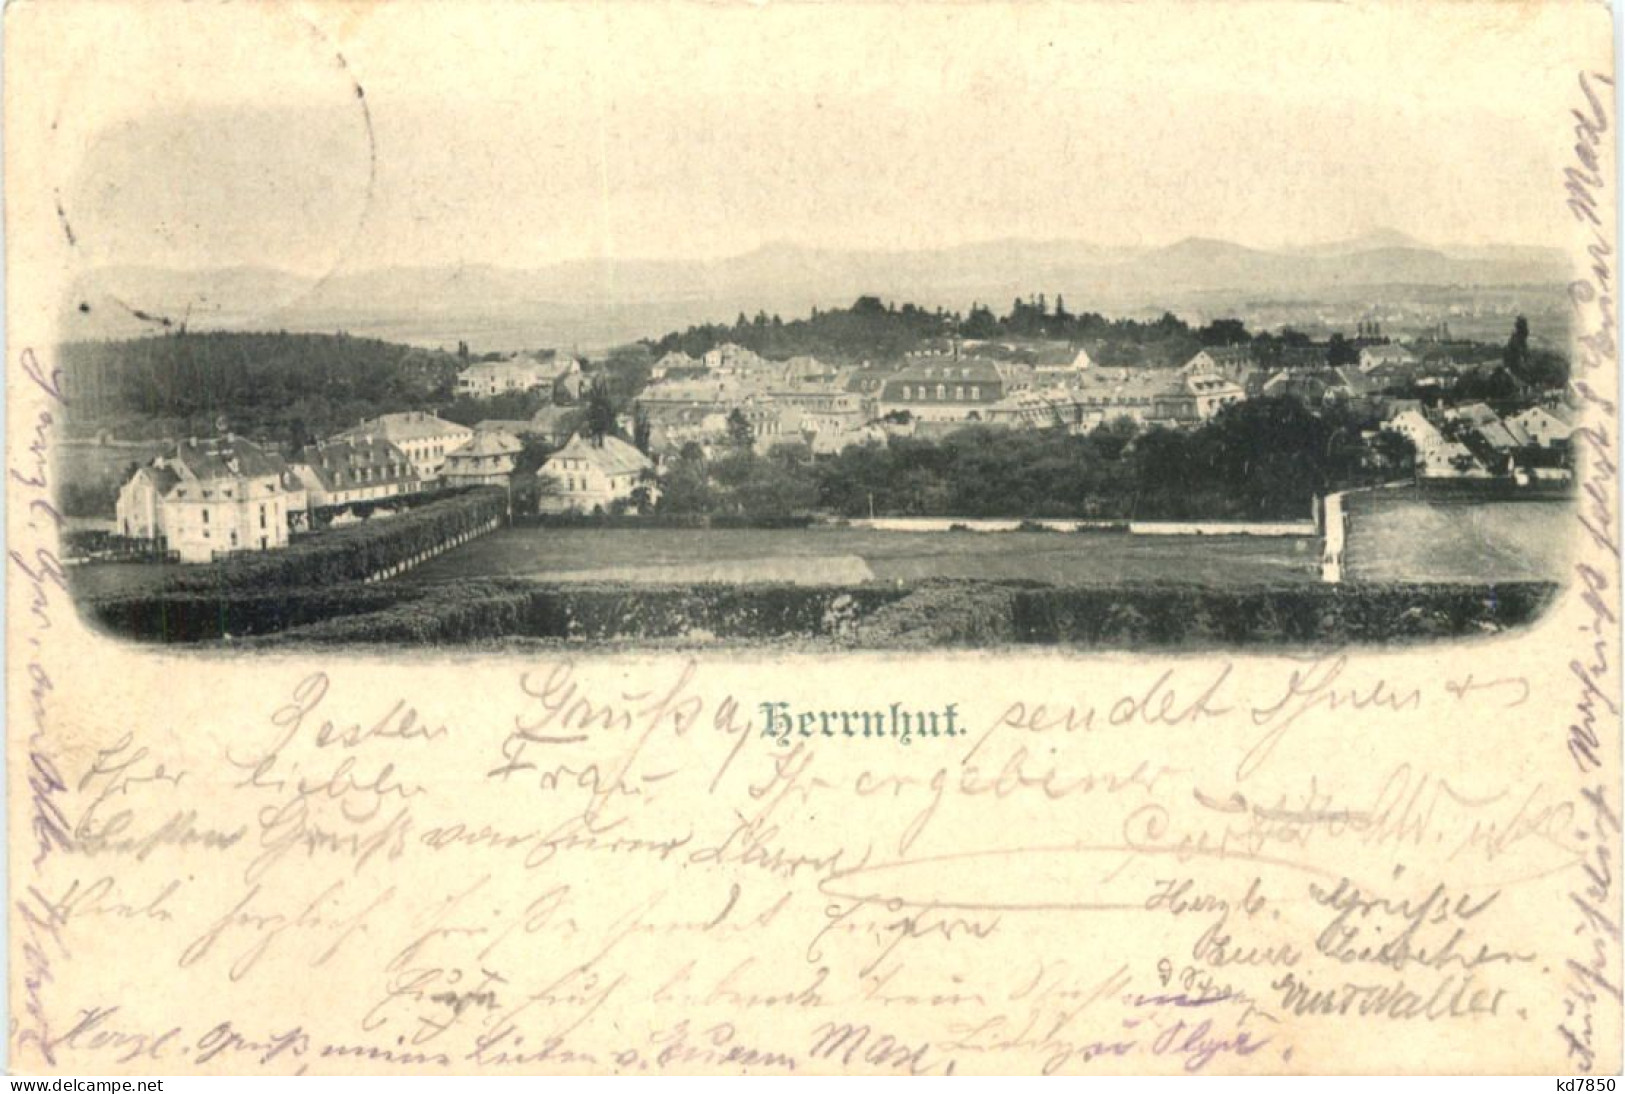 Herrnhut In Sachsen - Herrnhut